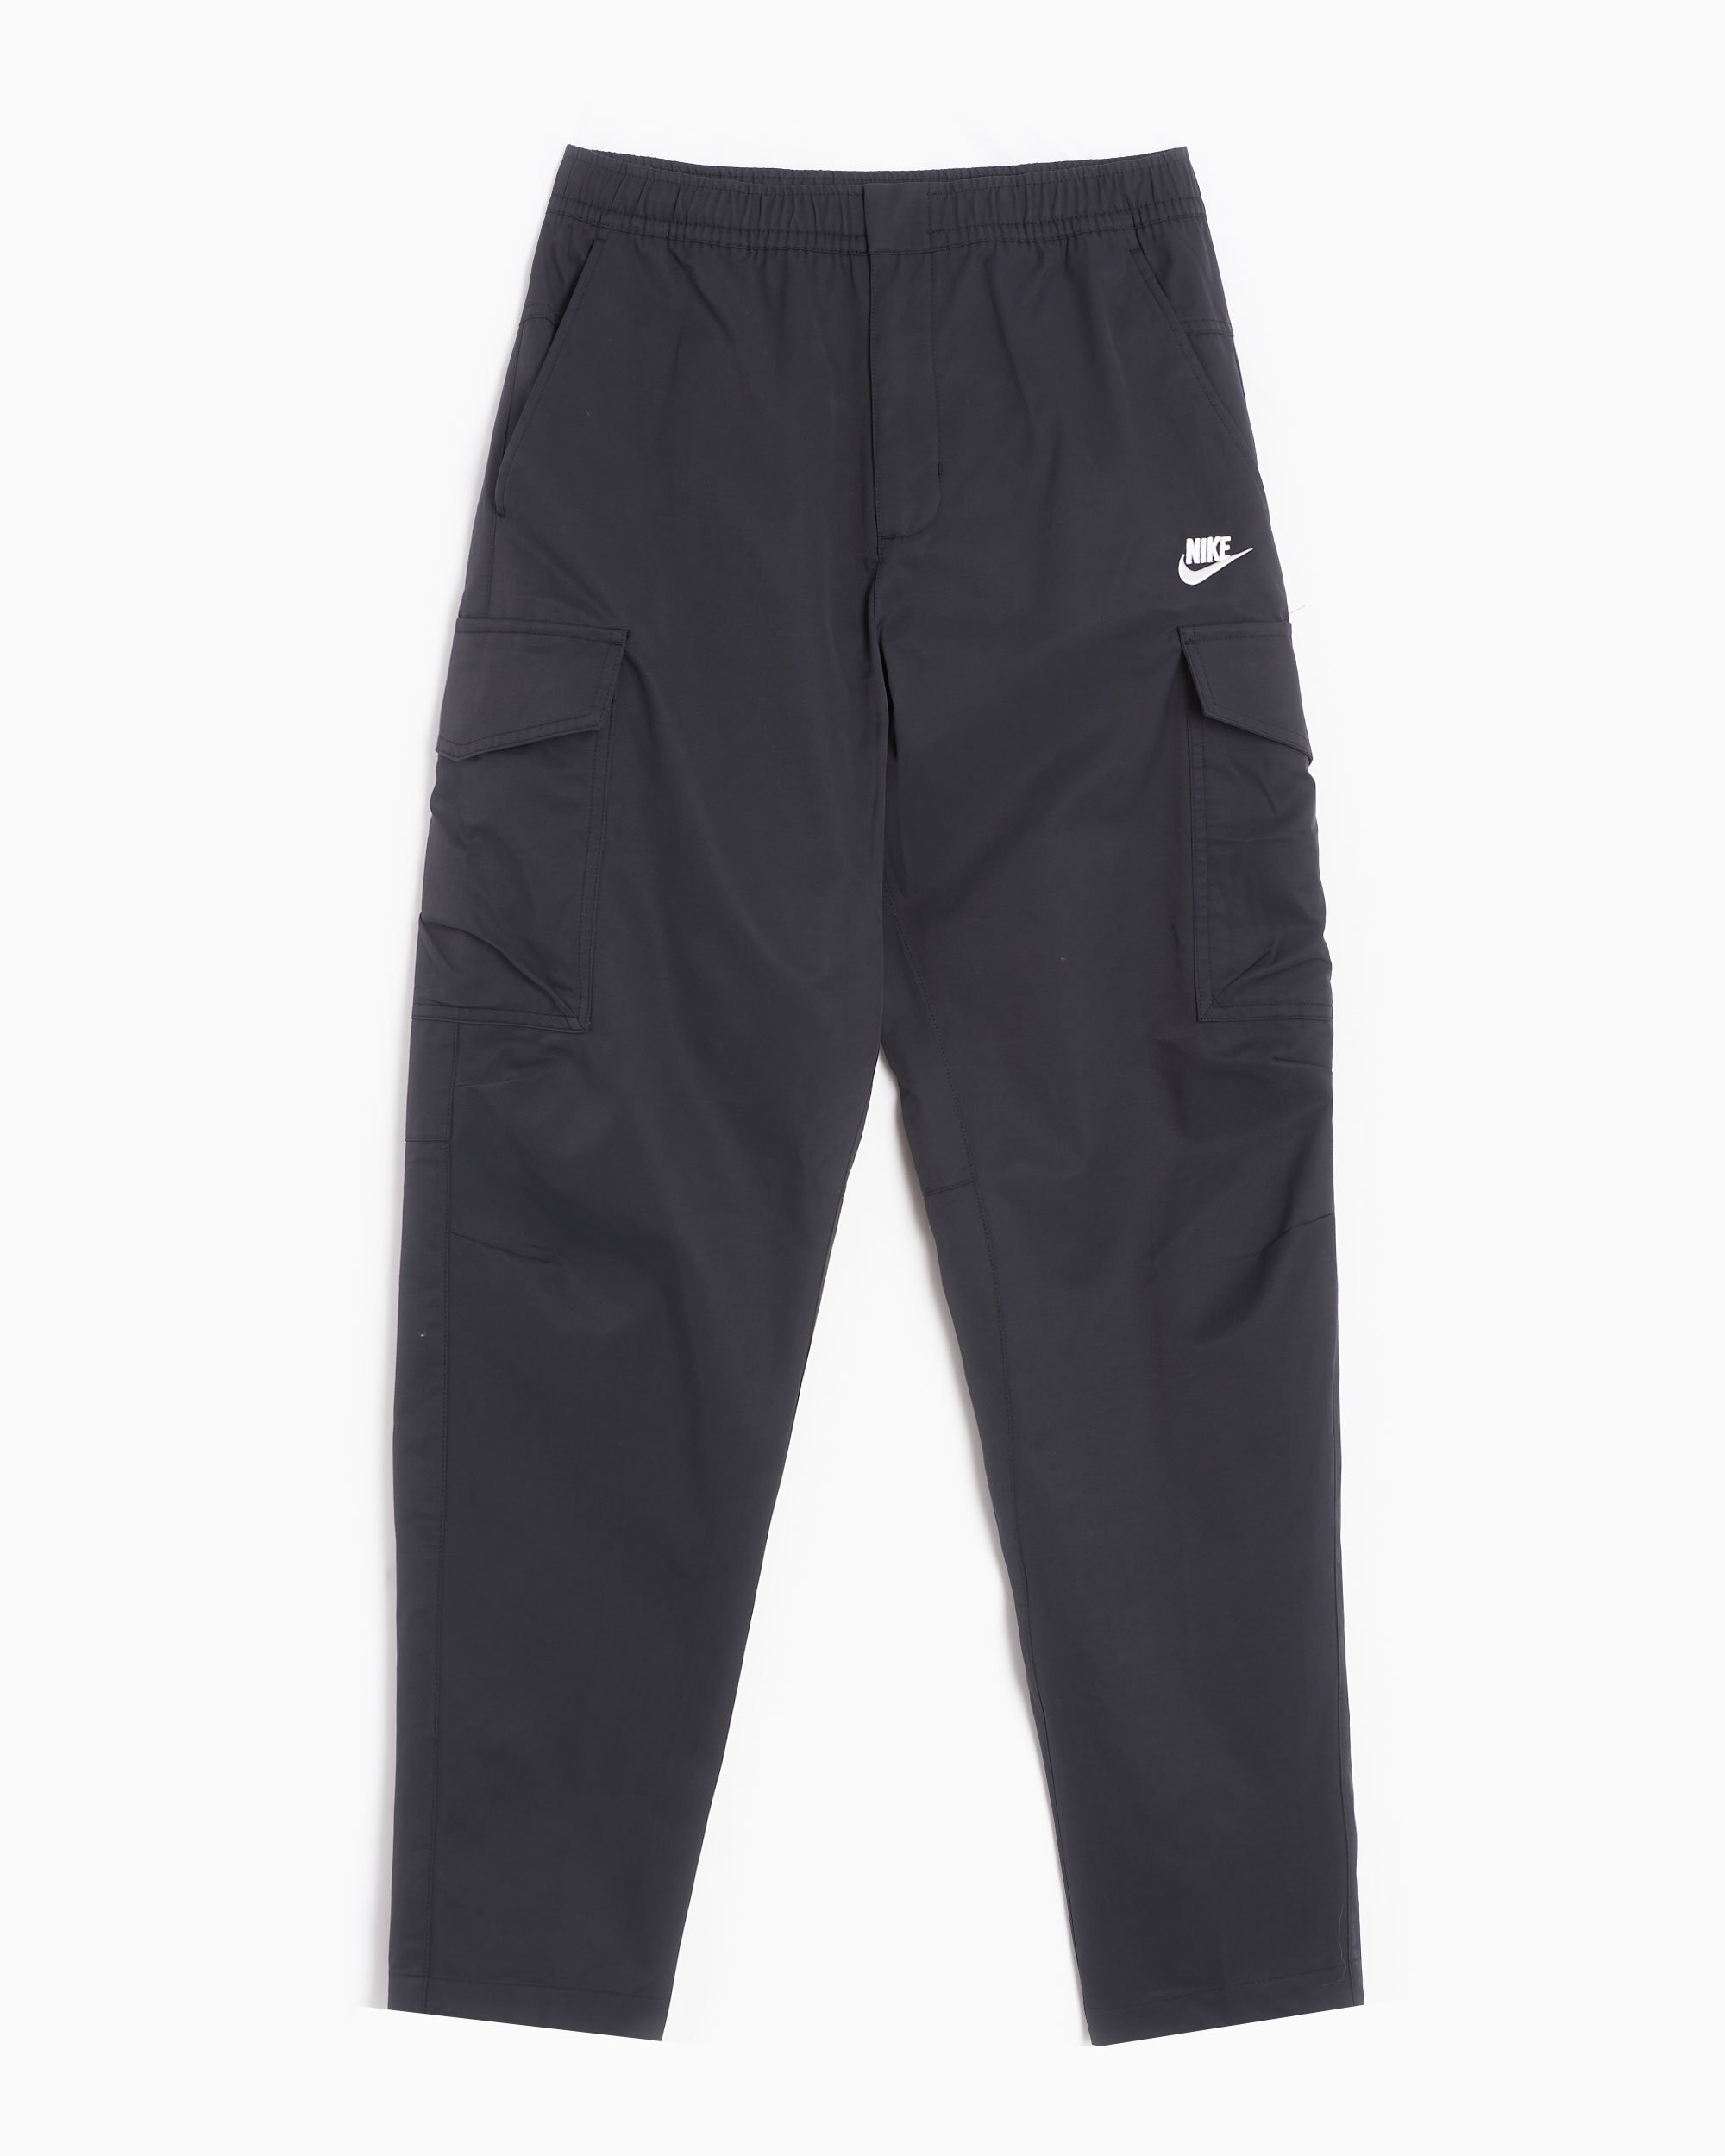 Nike Sportswear Woven Unlined Utility Men's Pants Black DD5207-010